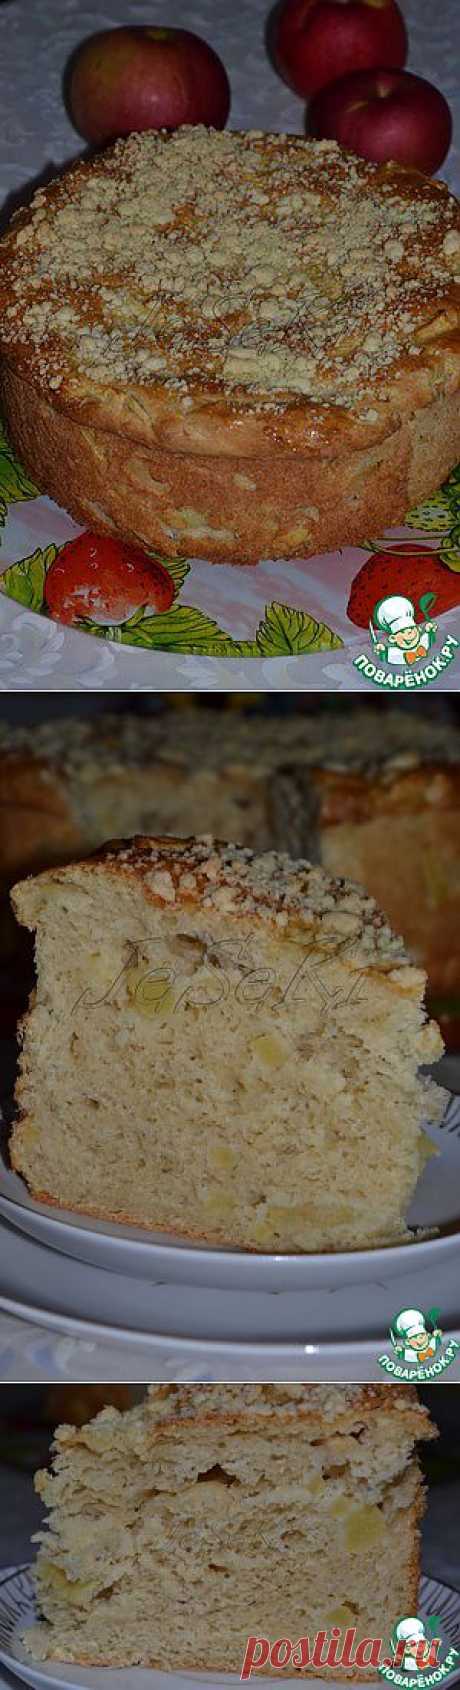 Белорусский яблочный пирог - кулинарный рецепт